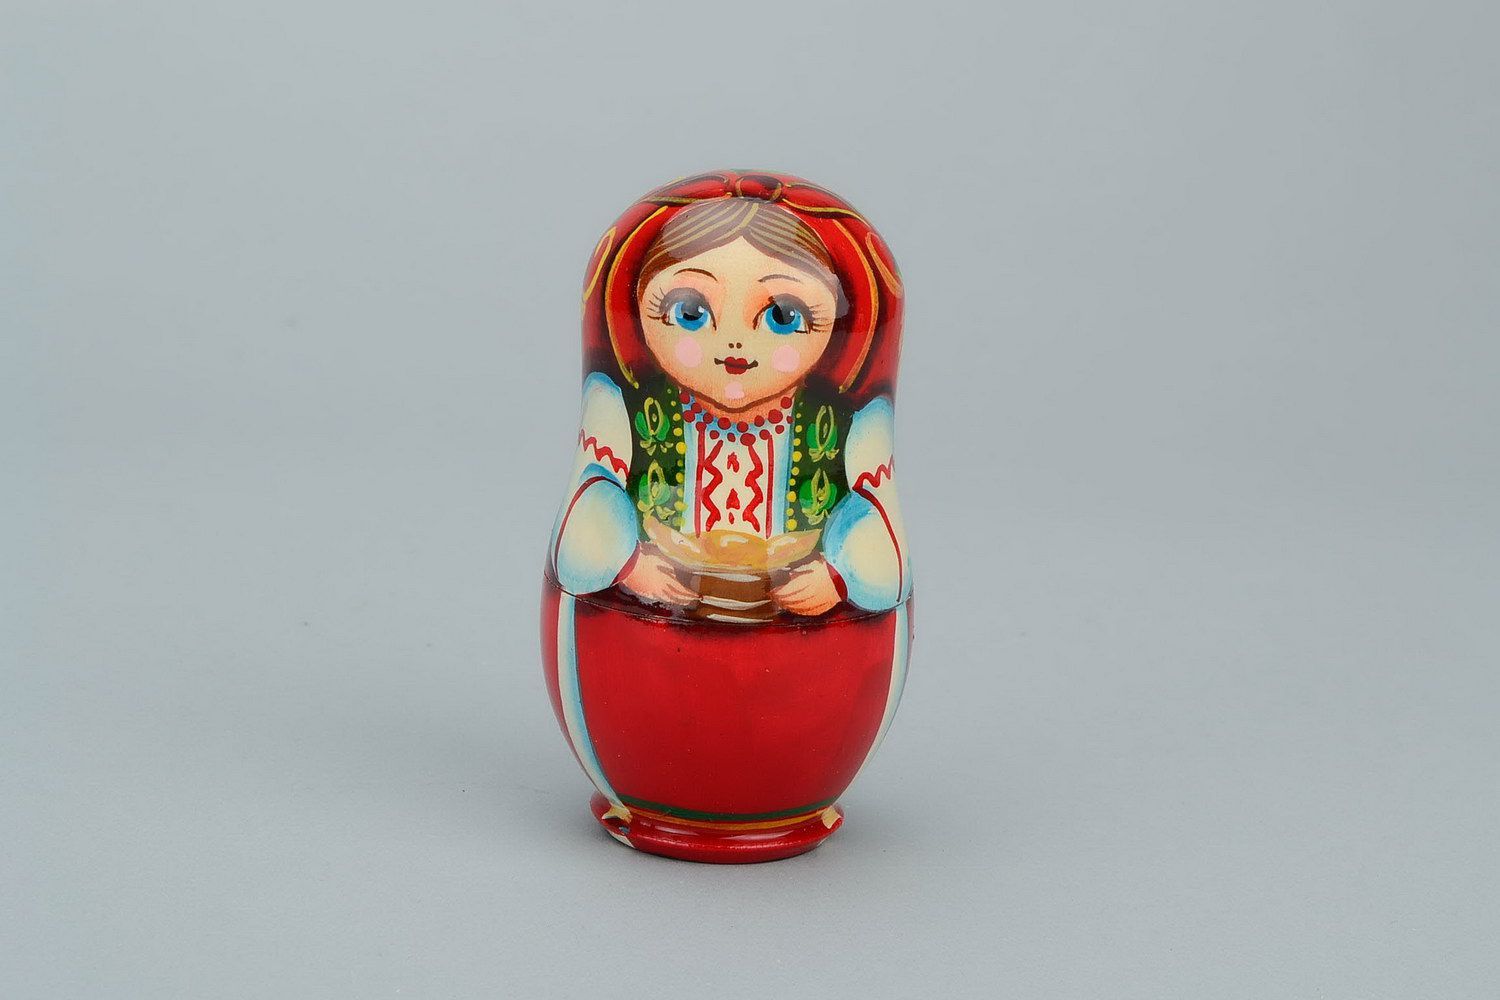 Matrioshka en una ropa nacional ucraniana con varéniki. Matrioshka es la muñeca de madera con vestido ruso campesino, que contiene otras de menor tamaño. Varéniki es una comida nacional de Ucrania
 foto 1